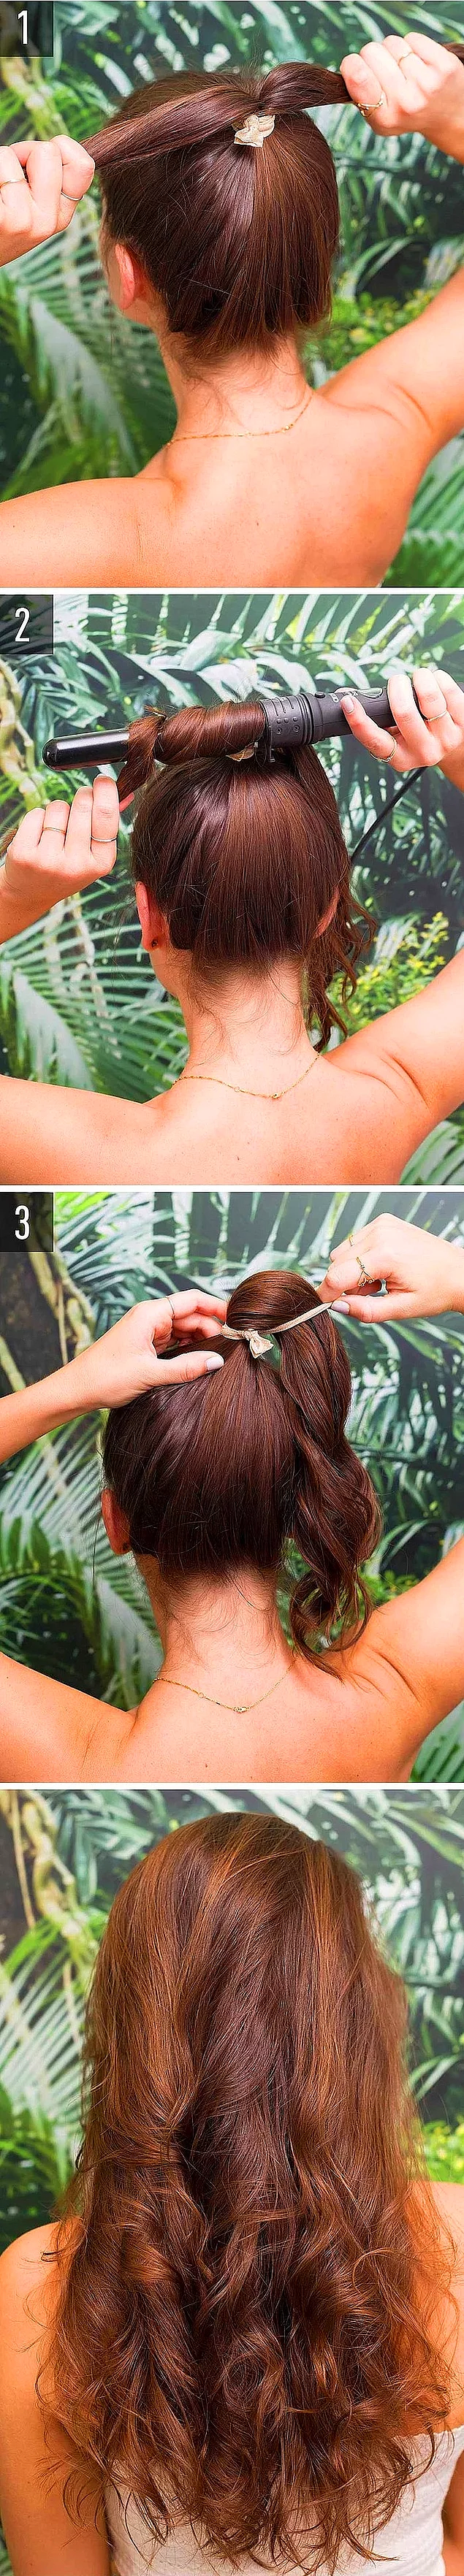 Saçlarınıza doğal dalgalar yapmanın bir diğer yolu!